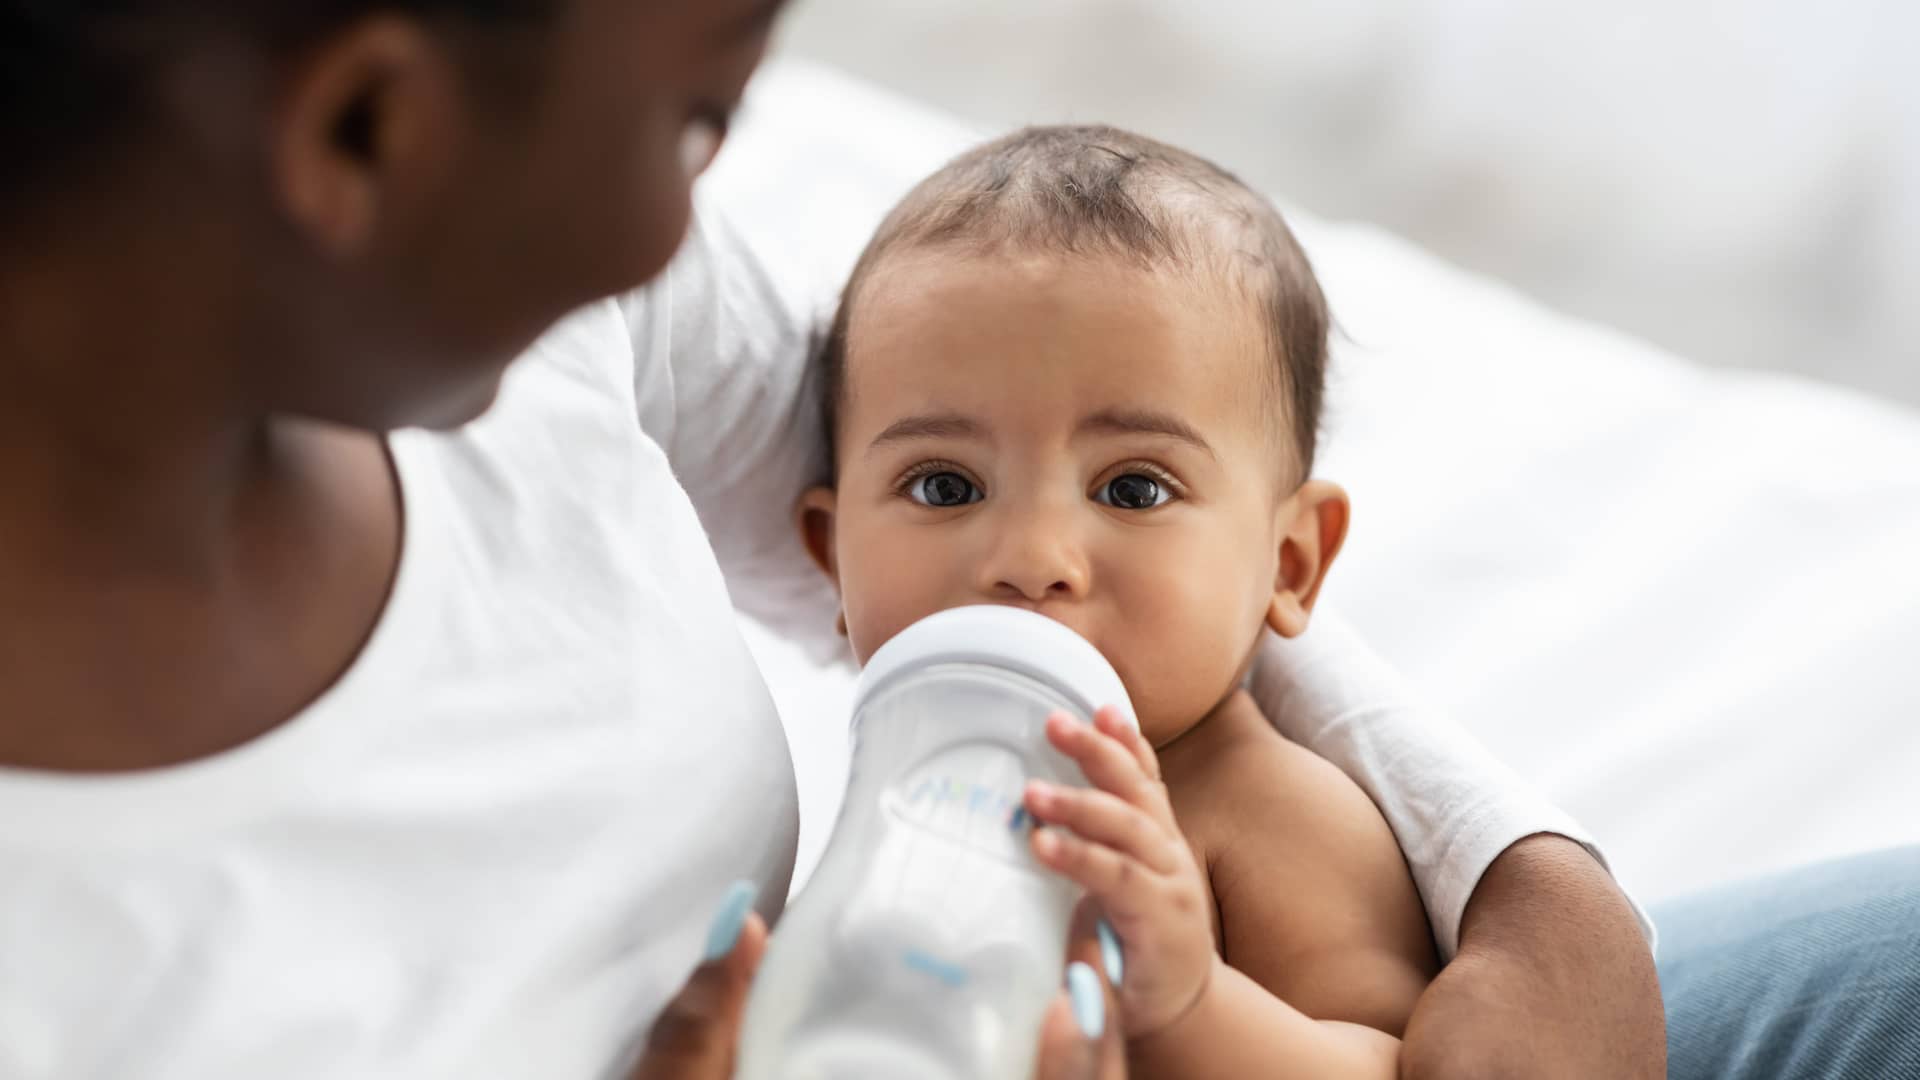 Alimentación del bebé de 4 meses: ¿le doy cereales?